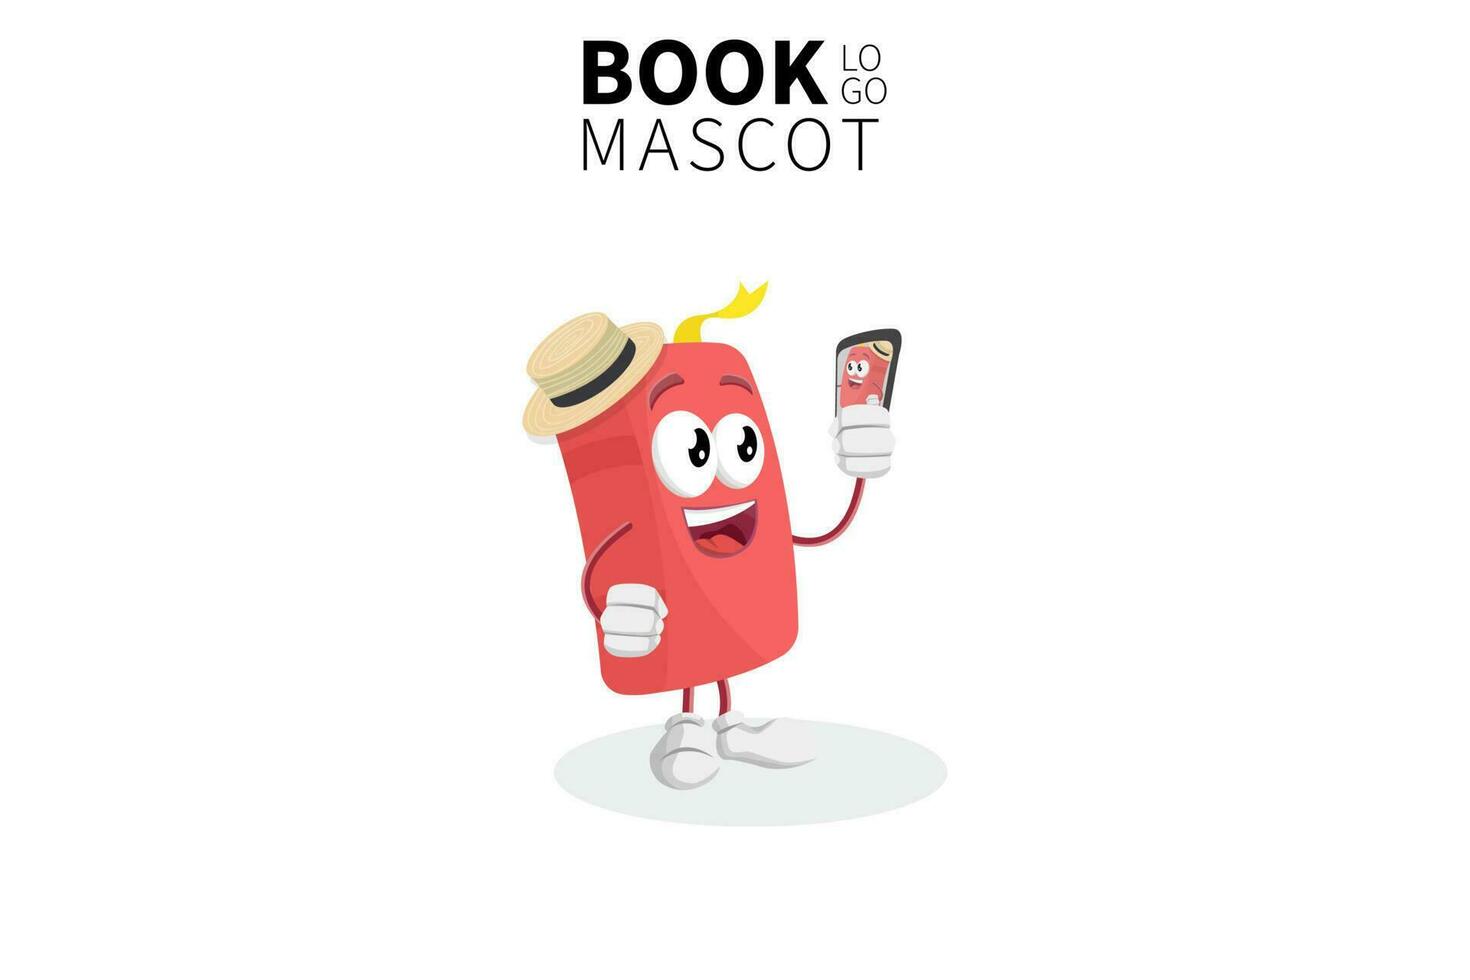 mascotte del libro dei cartoni animati, illustrazione vettoriale di un simpatico personaggio mascotte del libro rosso